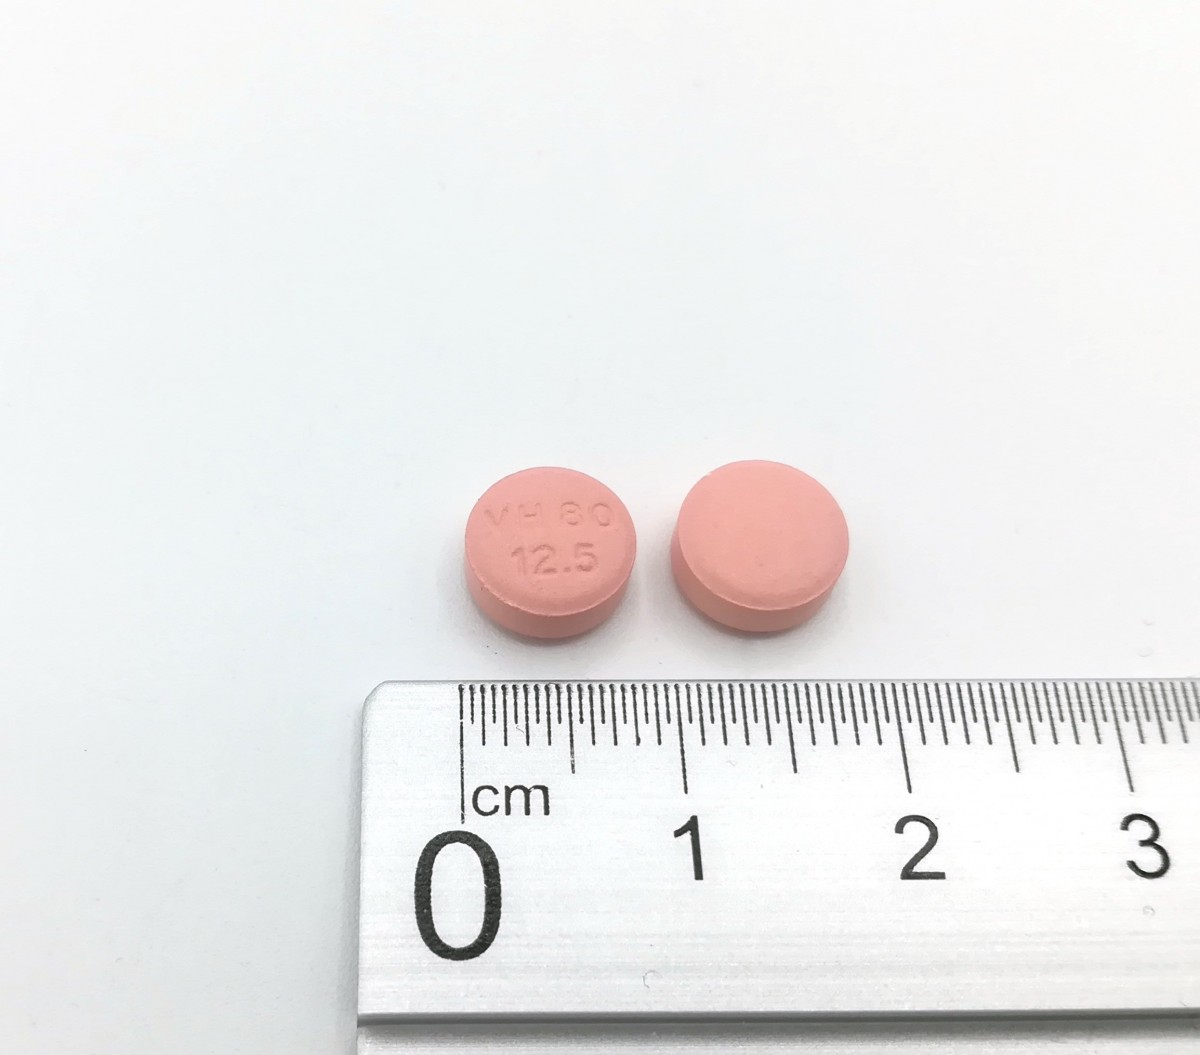 VALSARTAN/HIDROCLOROTIAZIDA NORMON 80 mg/12,5 mg COMPRIMIDOS RECUBIERTOS CON PELICULA EFG, 28 comprimidos fotografía de la forma farmacéutica.